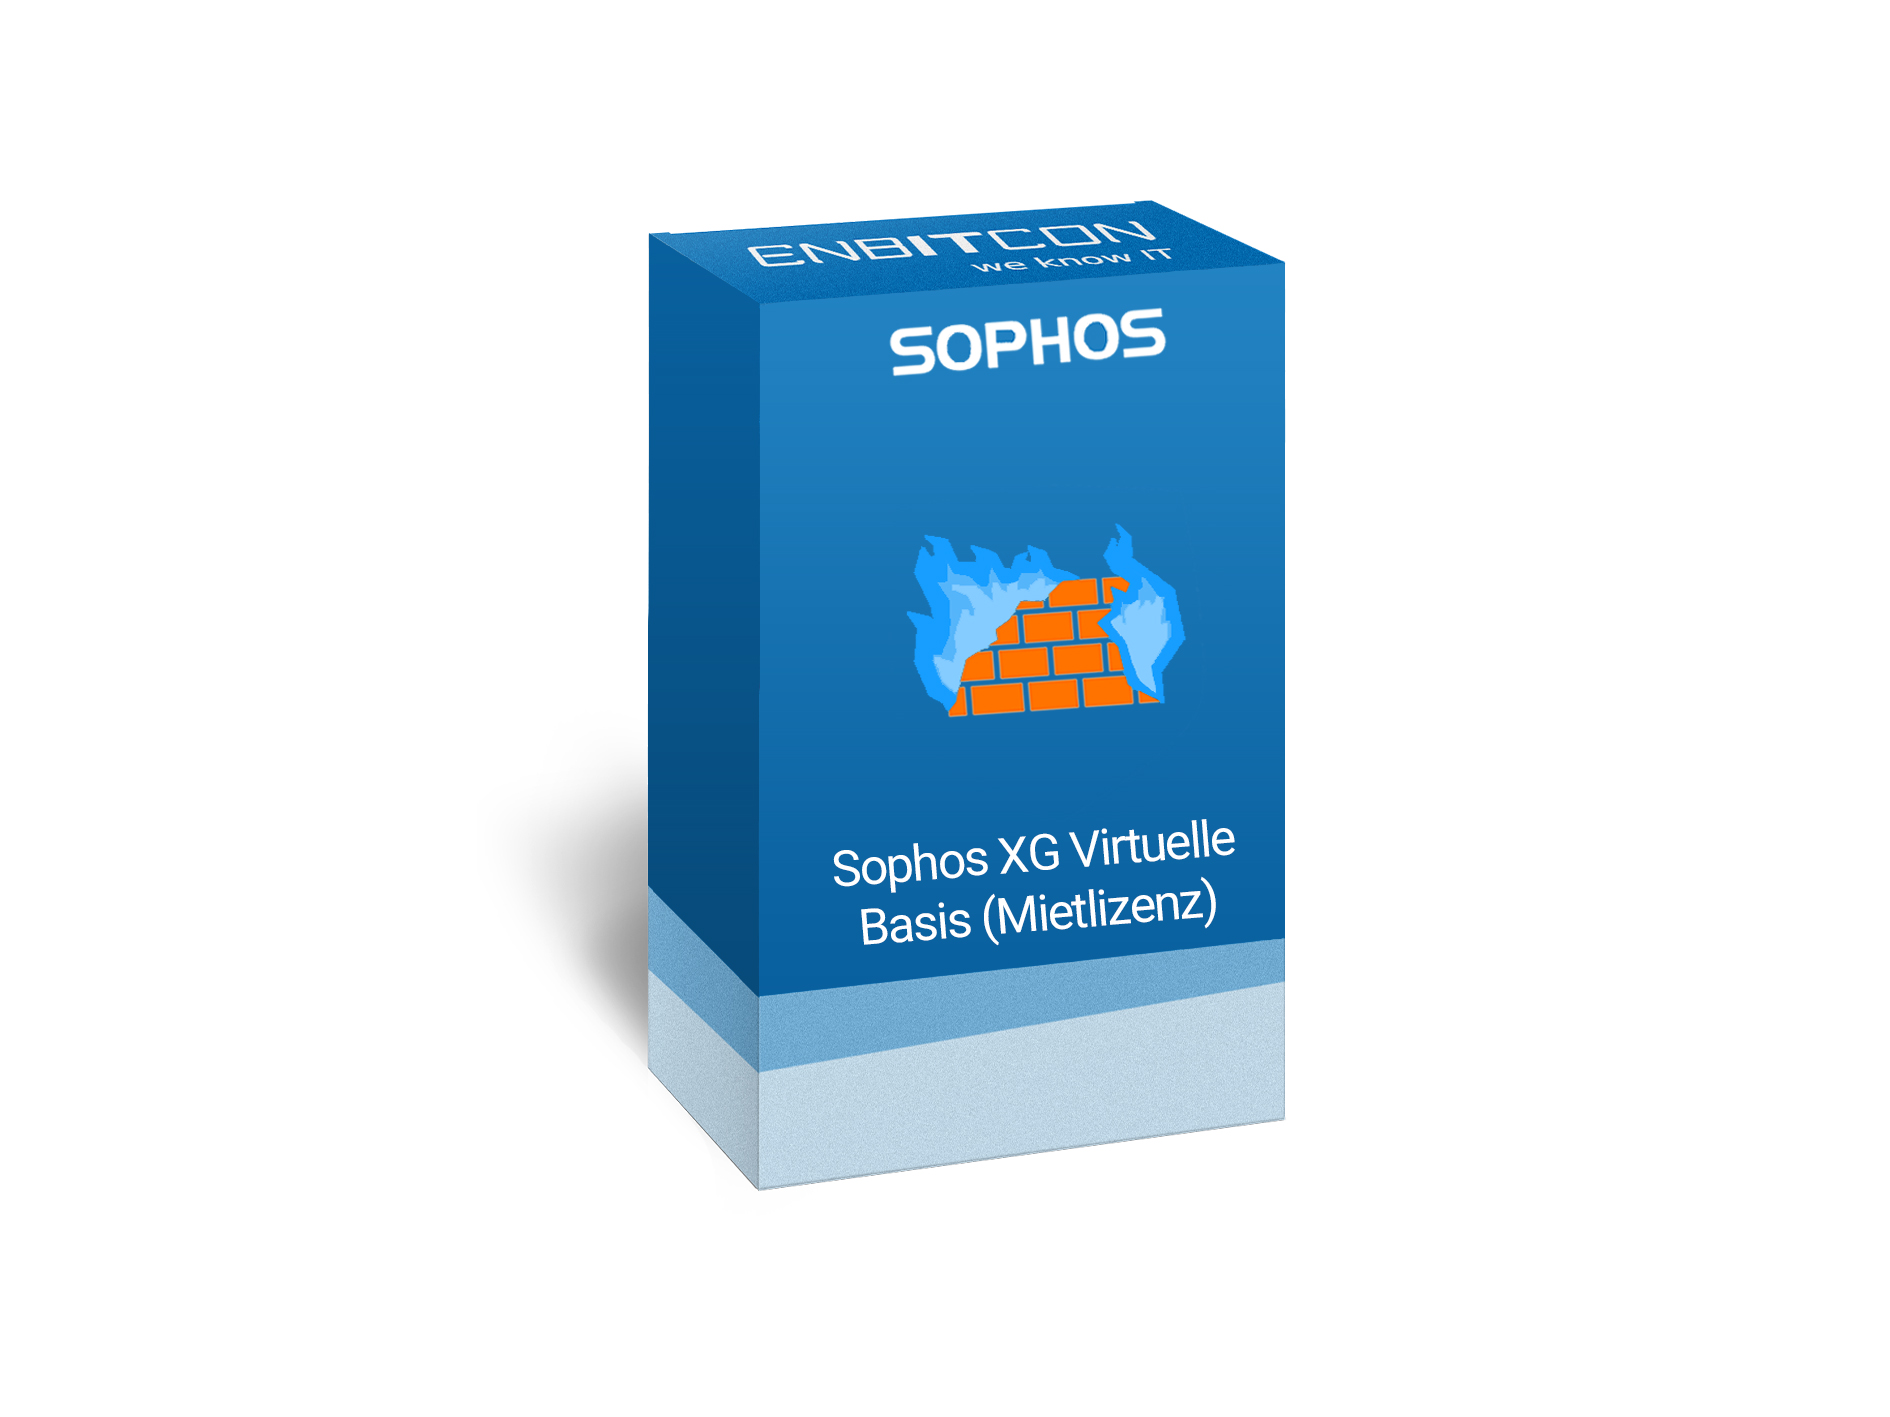 Sophos Virtuelle XG Firewall Mietlizenz Vorschaubild bestehend aus einer orangenen Mauer mit blauen Flammen